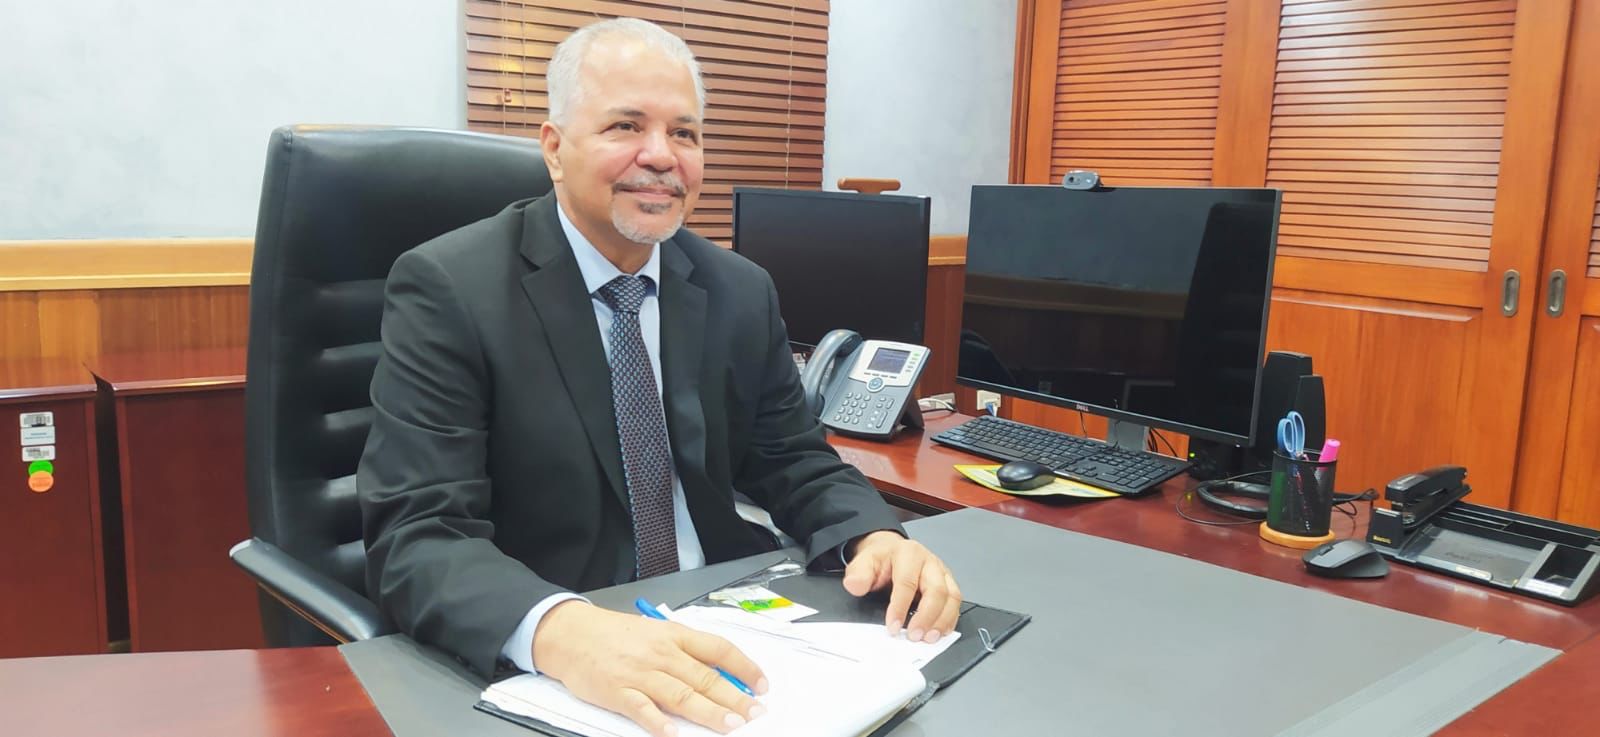 Rafael Salazar, l administrador general de la Empresa de Generación Hidroeléctrica Dominicana